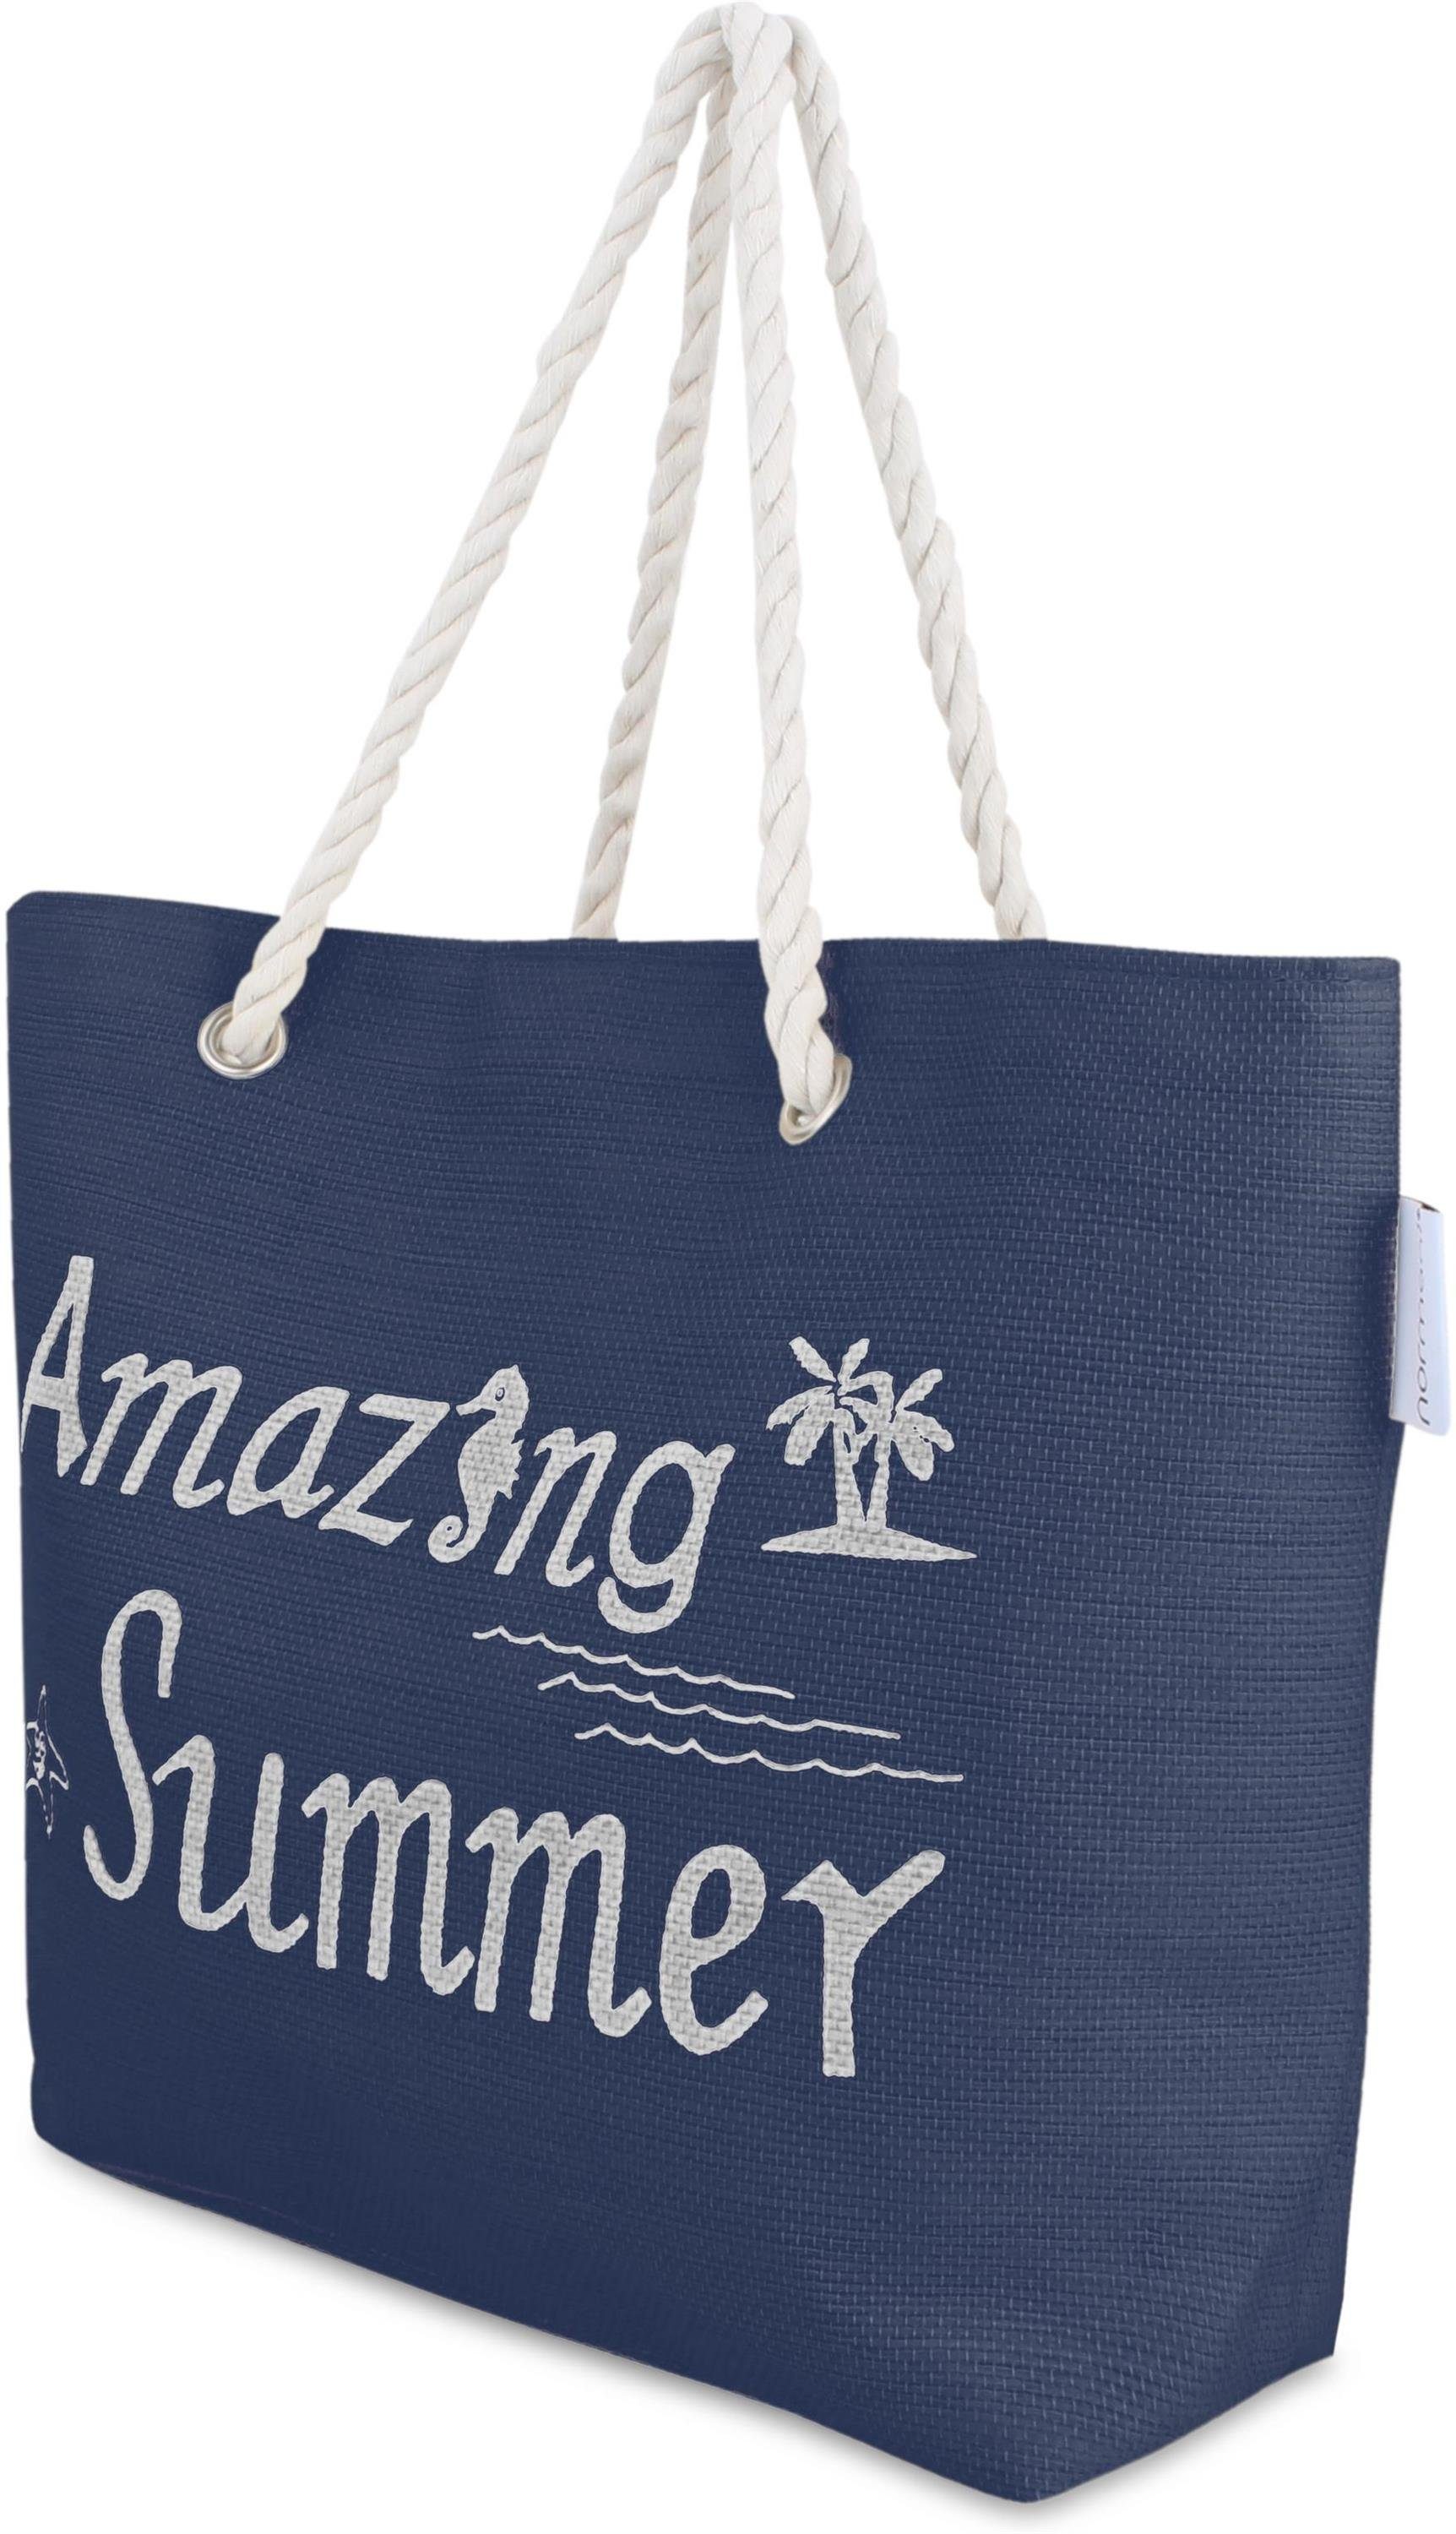 normani Strandtasche Bequeme Sommer-Umhängetasche, Strandtasche, Schultertasche Blue Summer Henkeltasche als tragbar Amazing